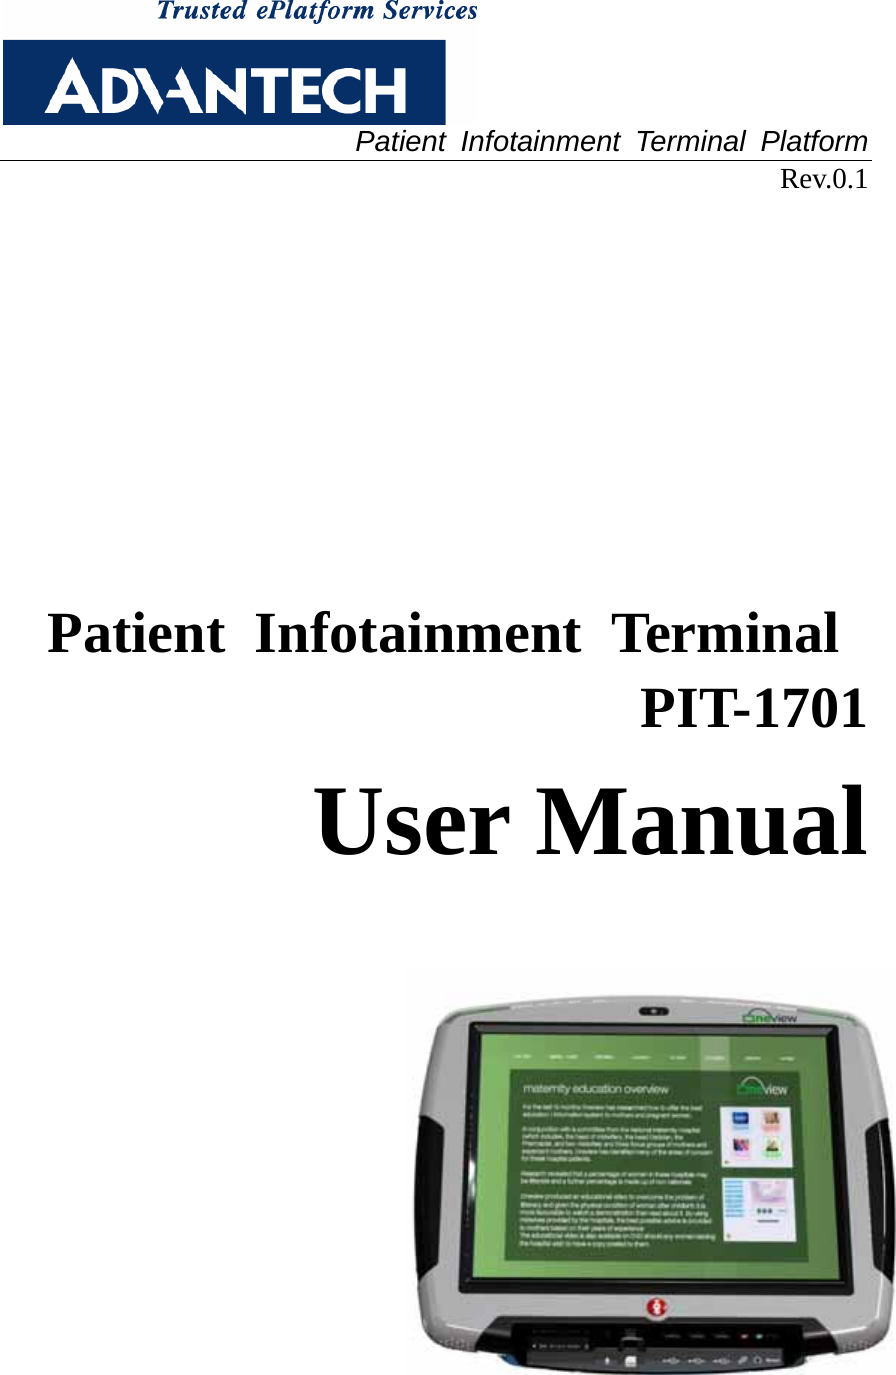  Patient Infotainment Terminal Platform Rev.0.1       Patient Infotainment Terminal  PIT-1701  User Manual    